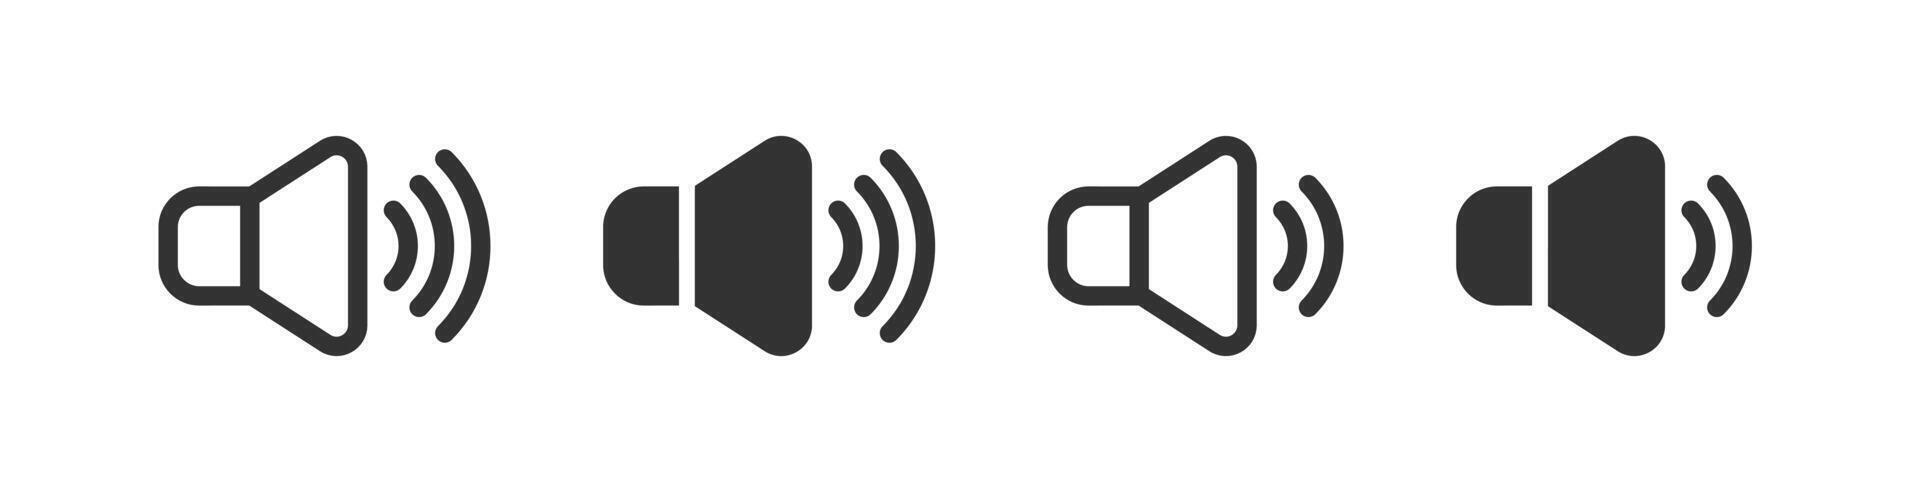 volumen icono. audio altavoz signo. sonido botones. música ruidoso interfaz. altoparlante web. vector